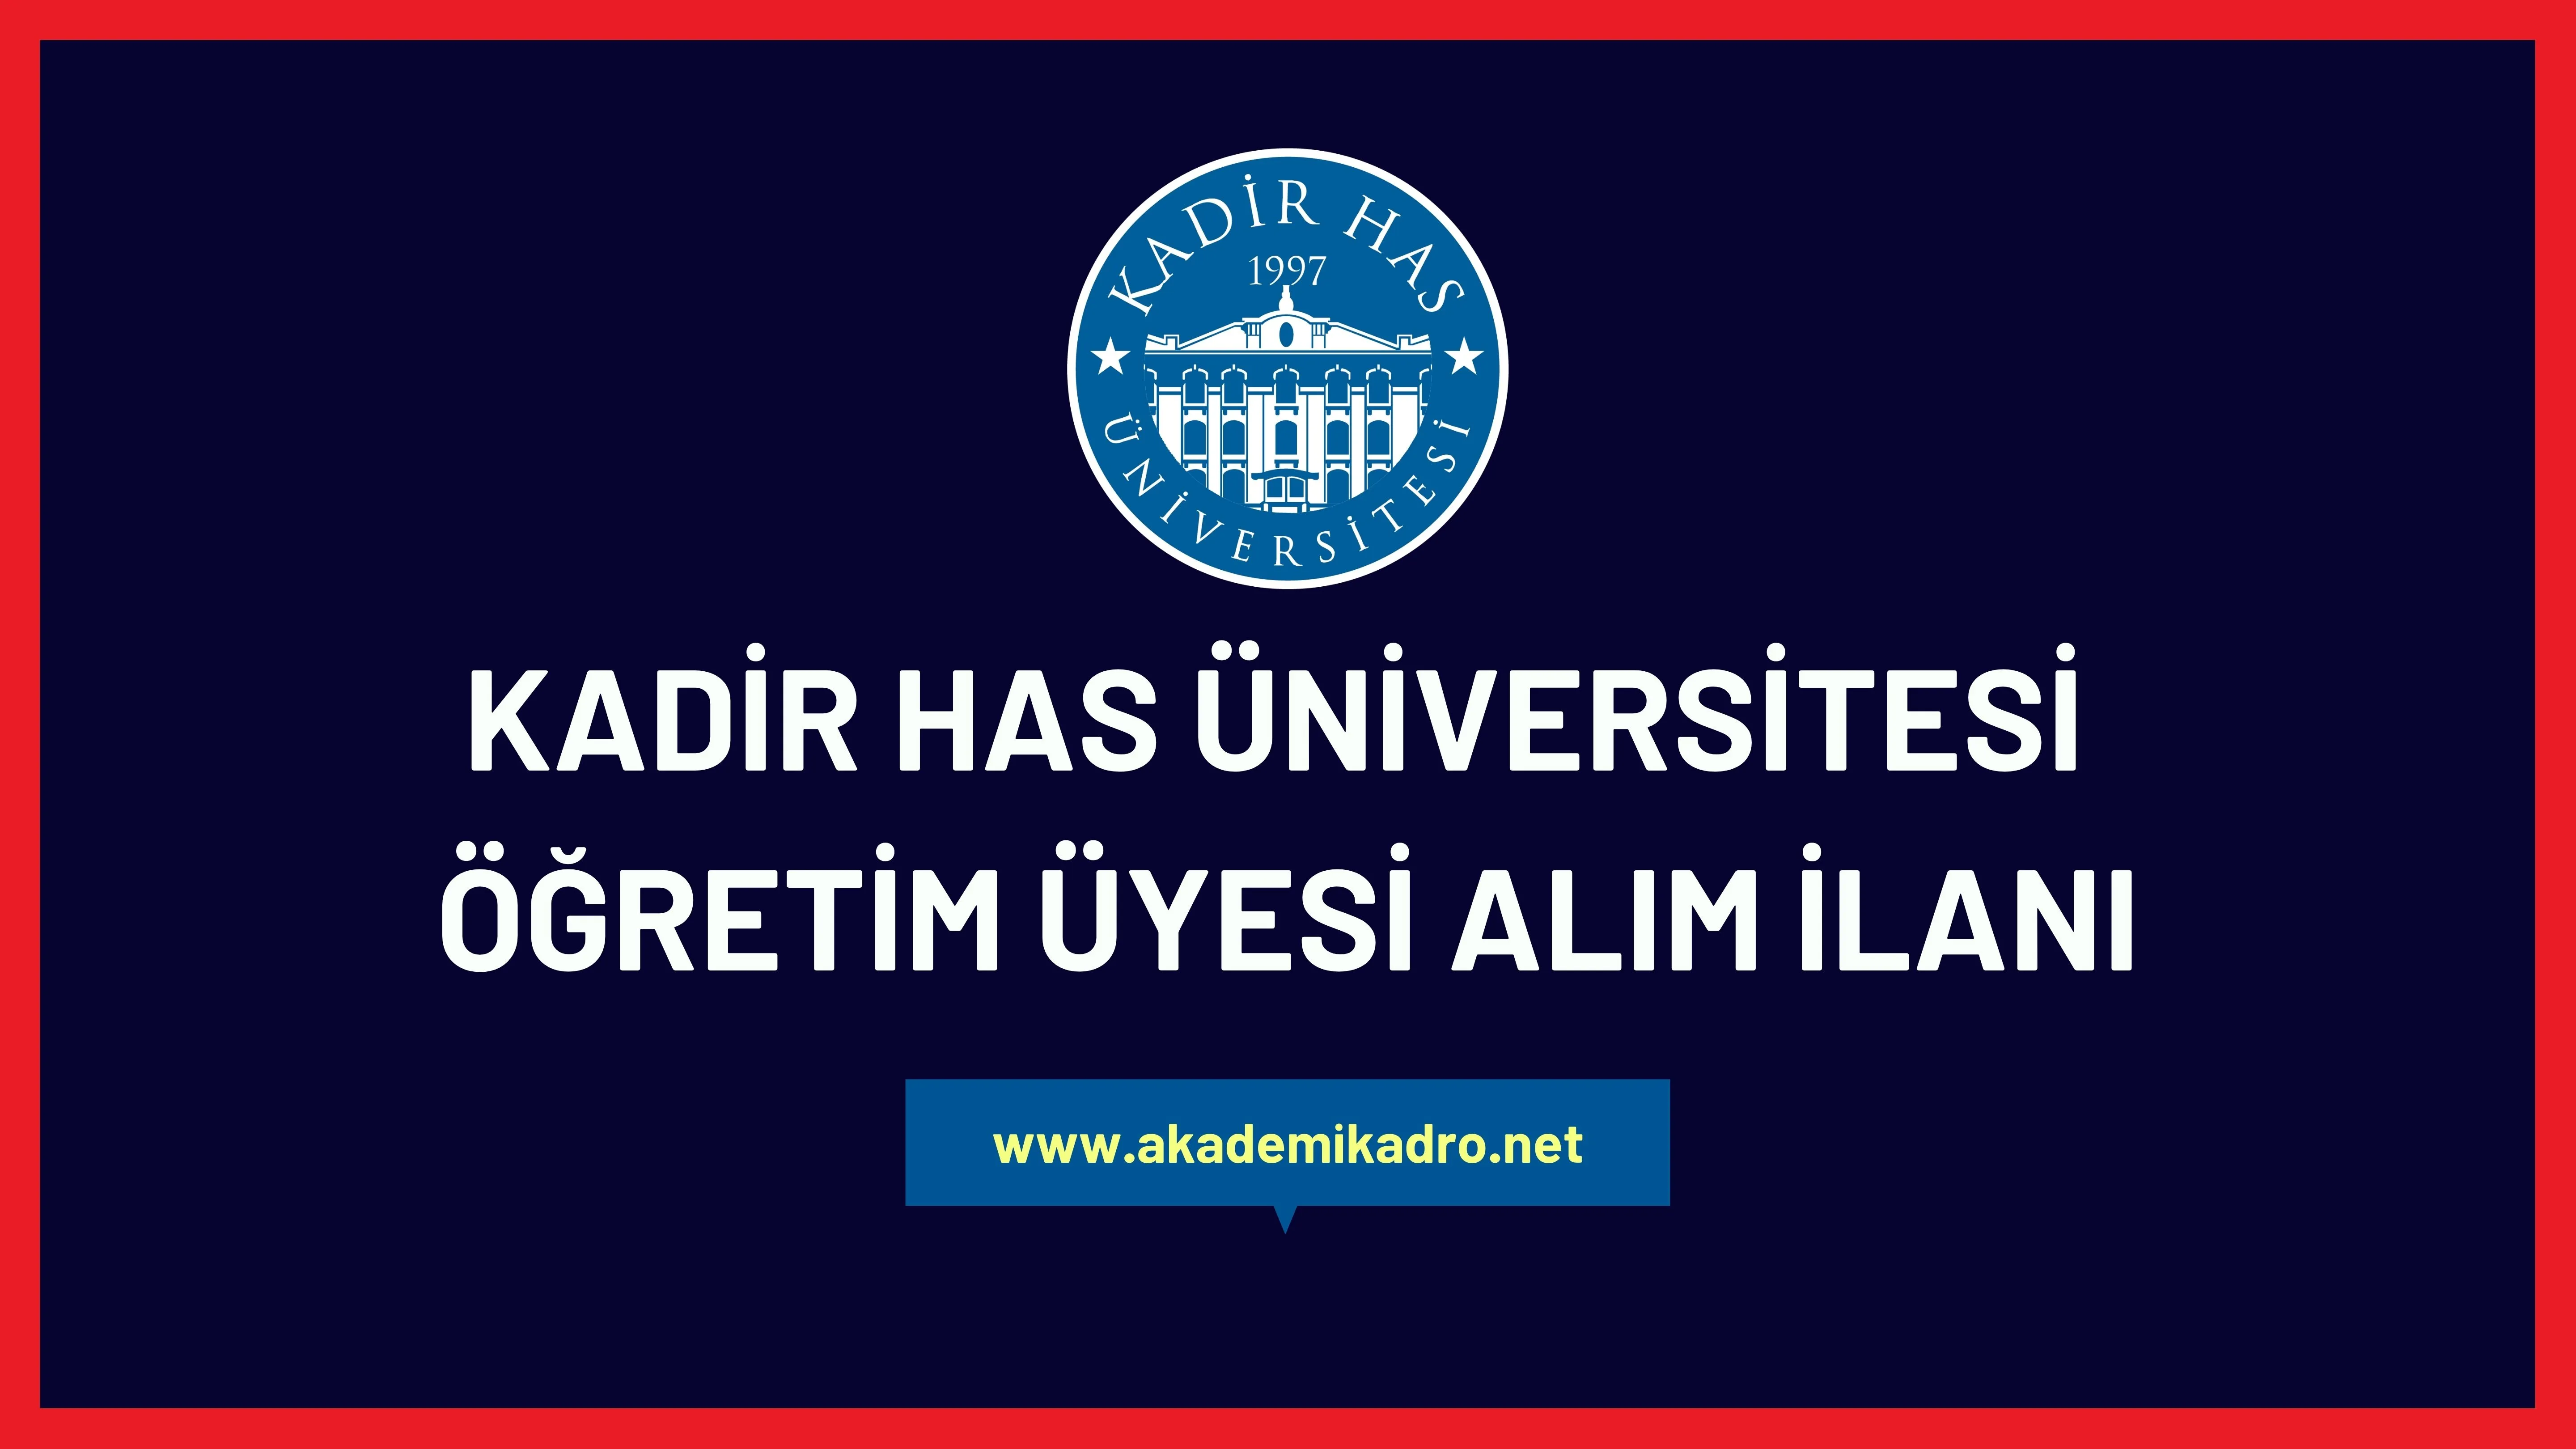 Kadir Has Üniversitesi 3 akademik personel alacak.